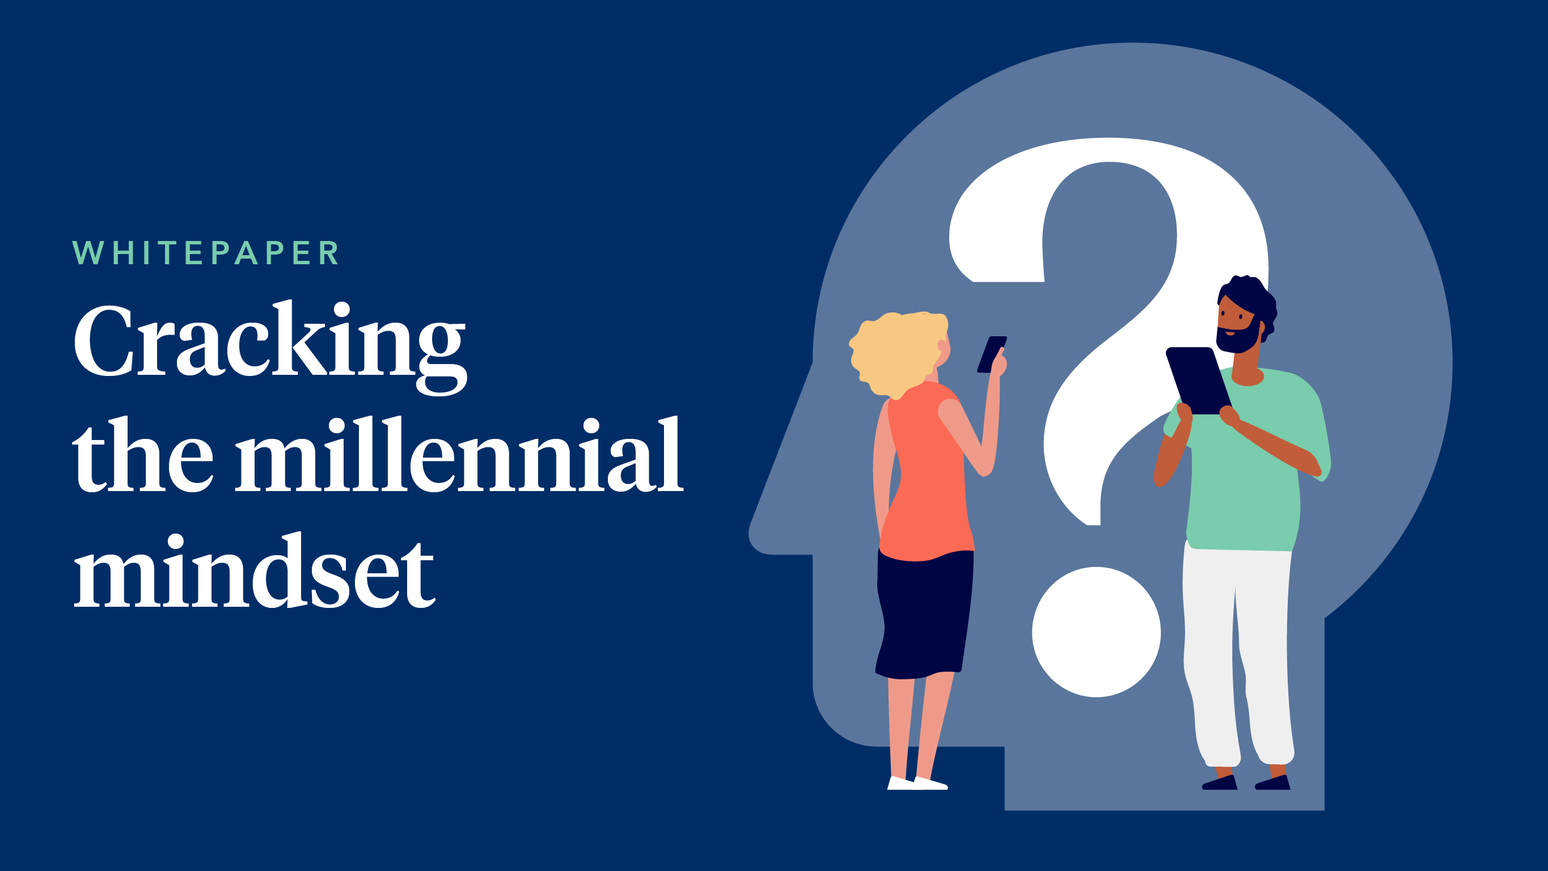 Cracking the millennial mindset